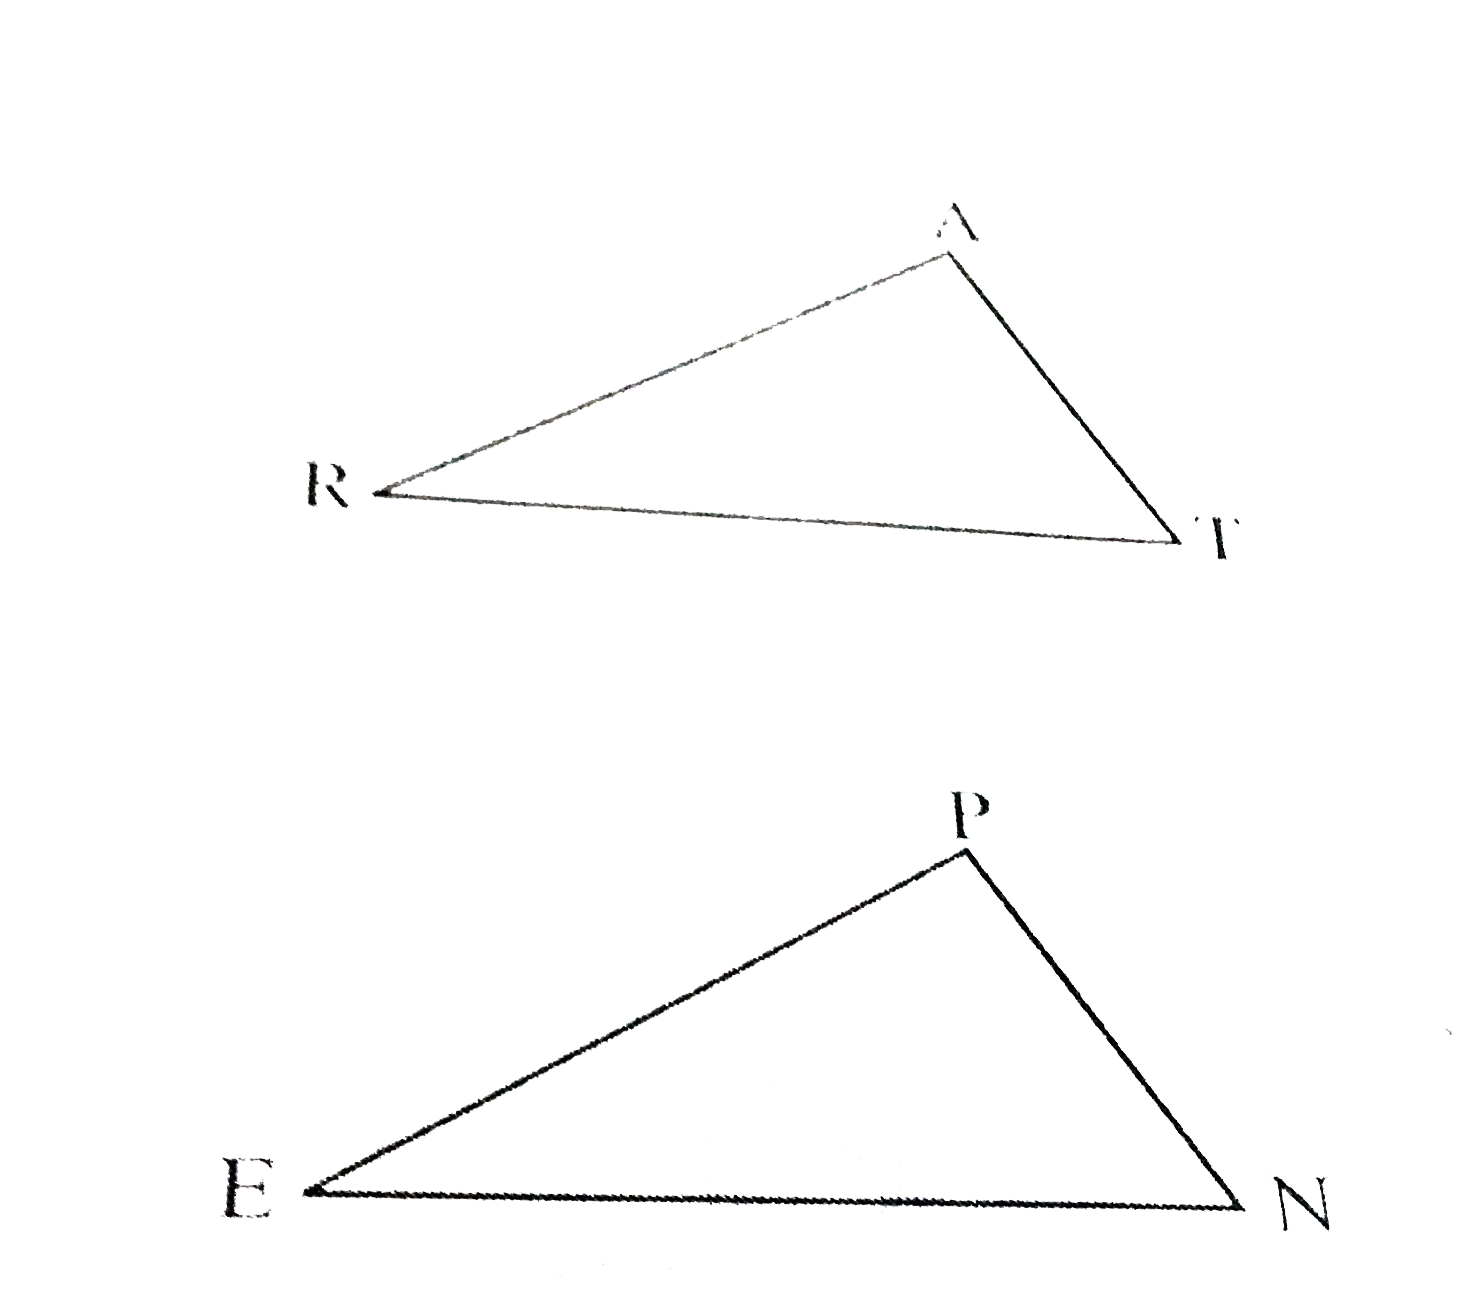 आप DeltaARTapprox DeltaPEN दर्शाना चाहते है,    (a) यदि आप SSS सर्वांगसमता प्रतिबंध का प्रयोग करे तो आपको दर्शाने की आवश्यकता है: (i) AR= (ii) RT= (iii) AT=   (b) यदि यह दिया गया है की angleT=angleN और आपको SAS प्रतिबंध का प्रयोग करना है , तो आपको आवश्यकता होंगी: (i) RT= और  (ii) PN=   (c) यदि यह दिया गया है की AT=PN और आपको ASA प्रतिबंध का प्रयोग करना है तो आपको आवश्यकता होंगी: (i) ?= (ii) ?=